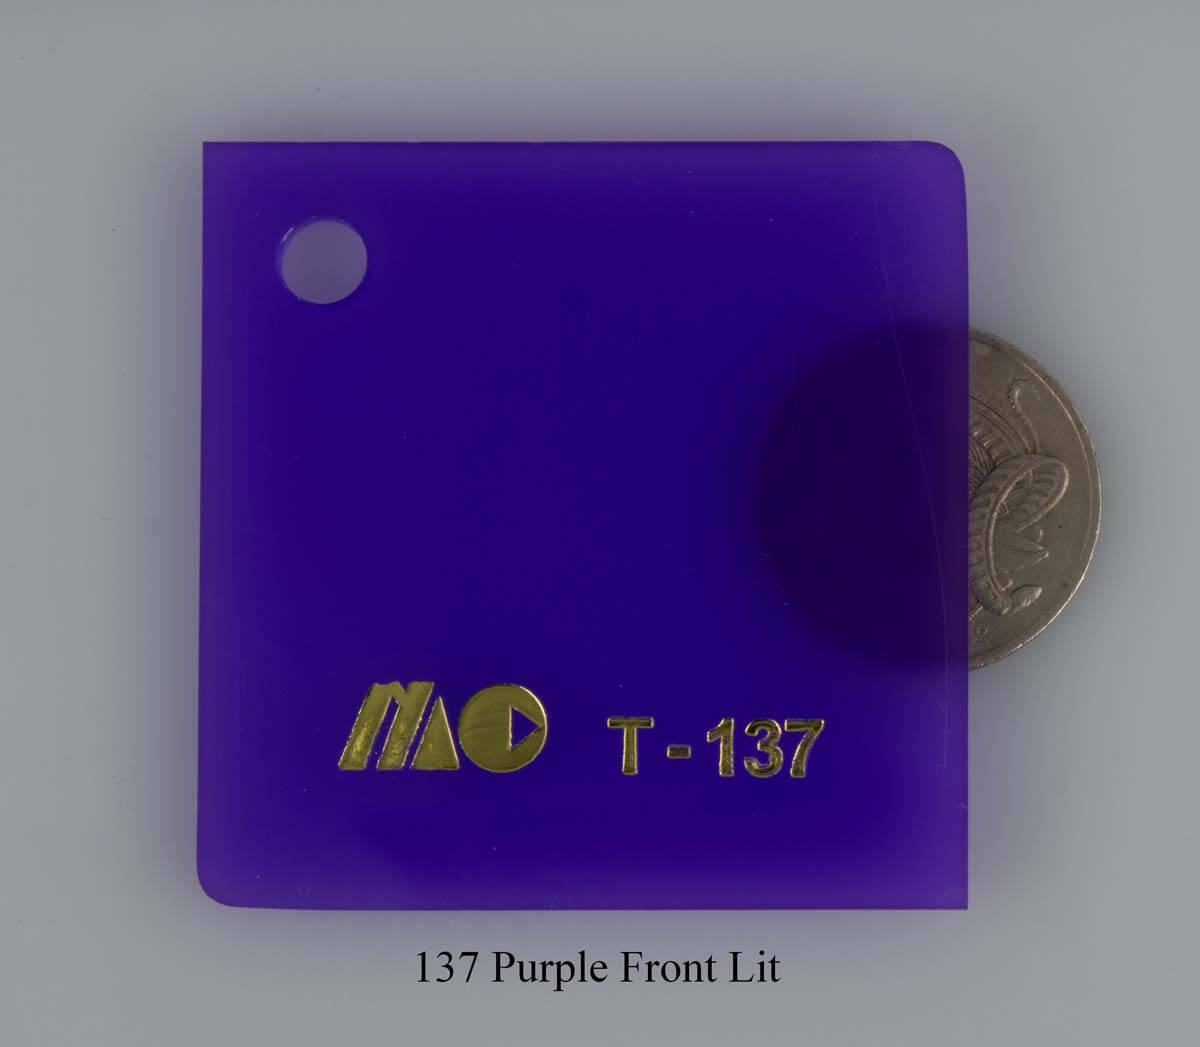 137 Purple Front Lit